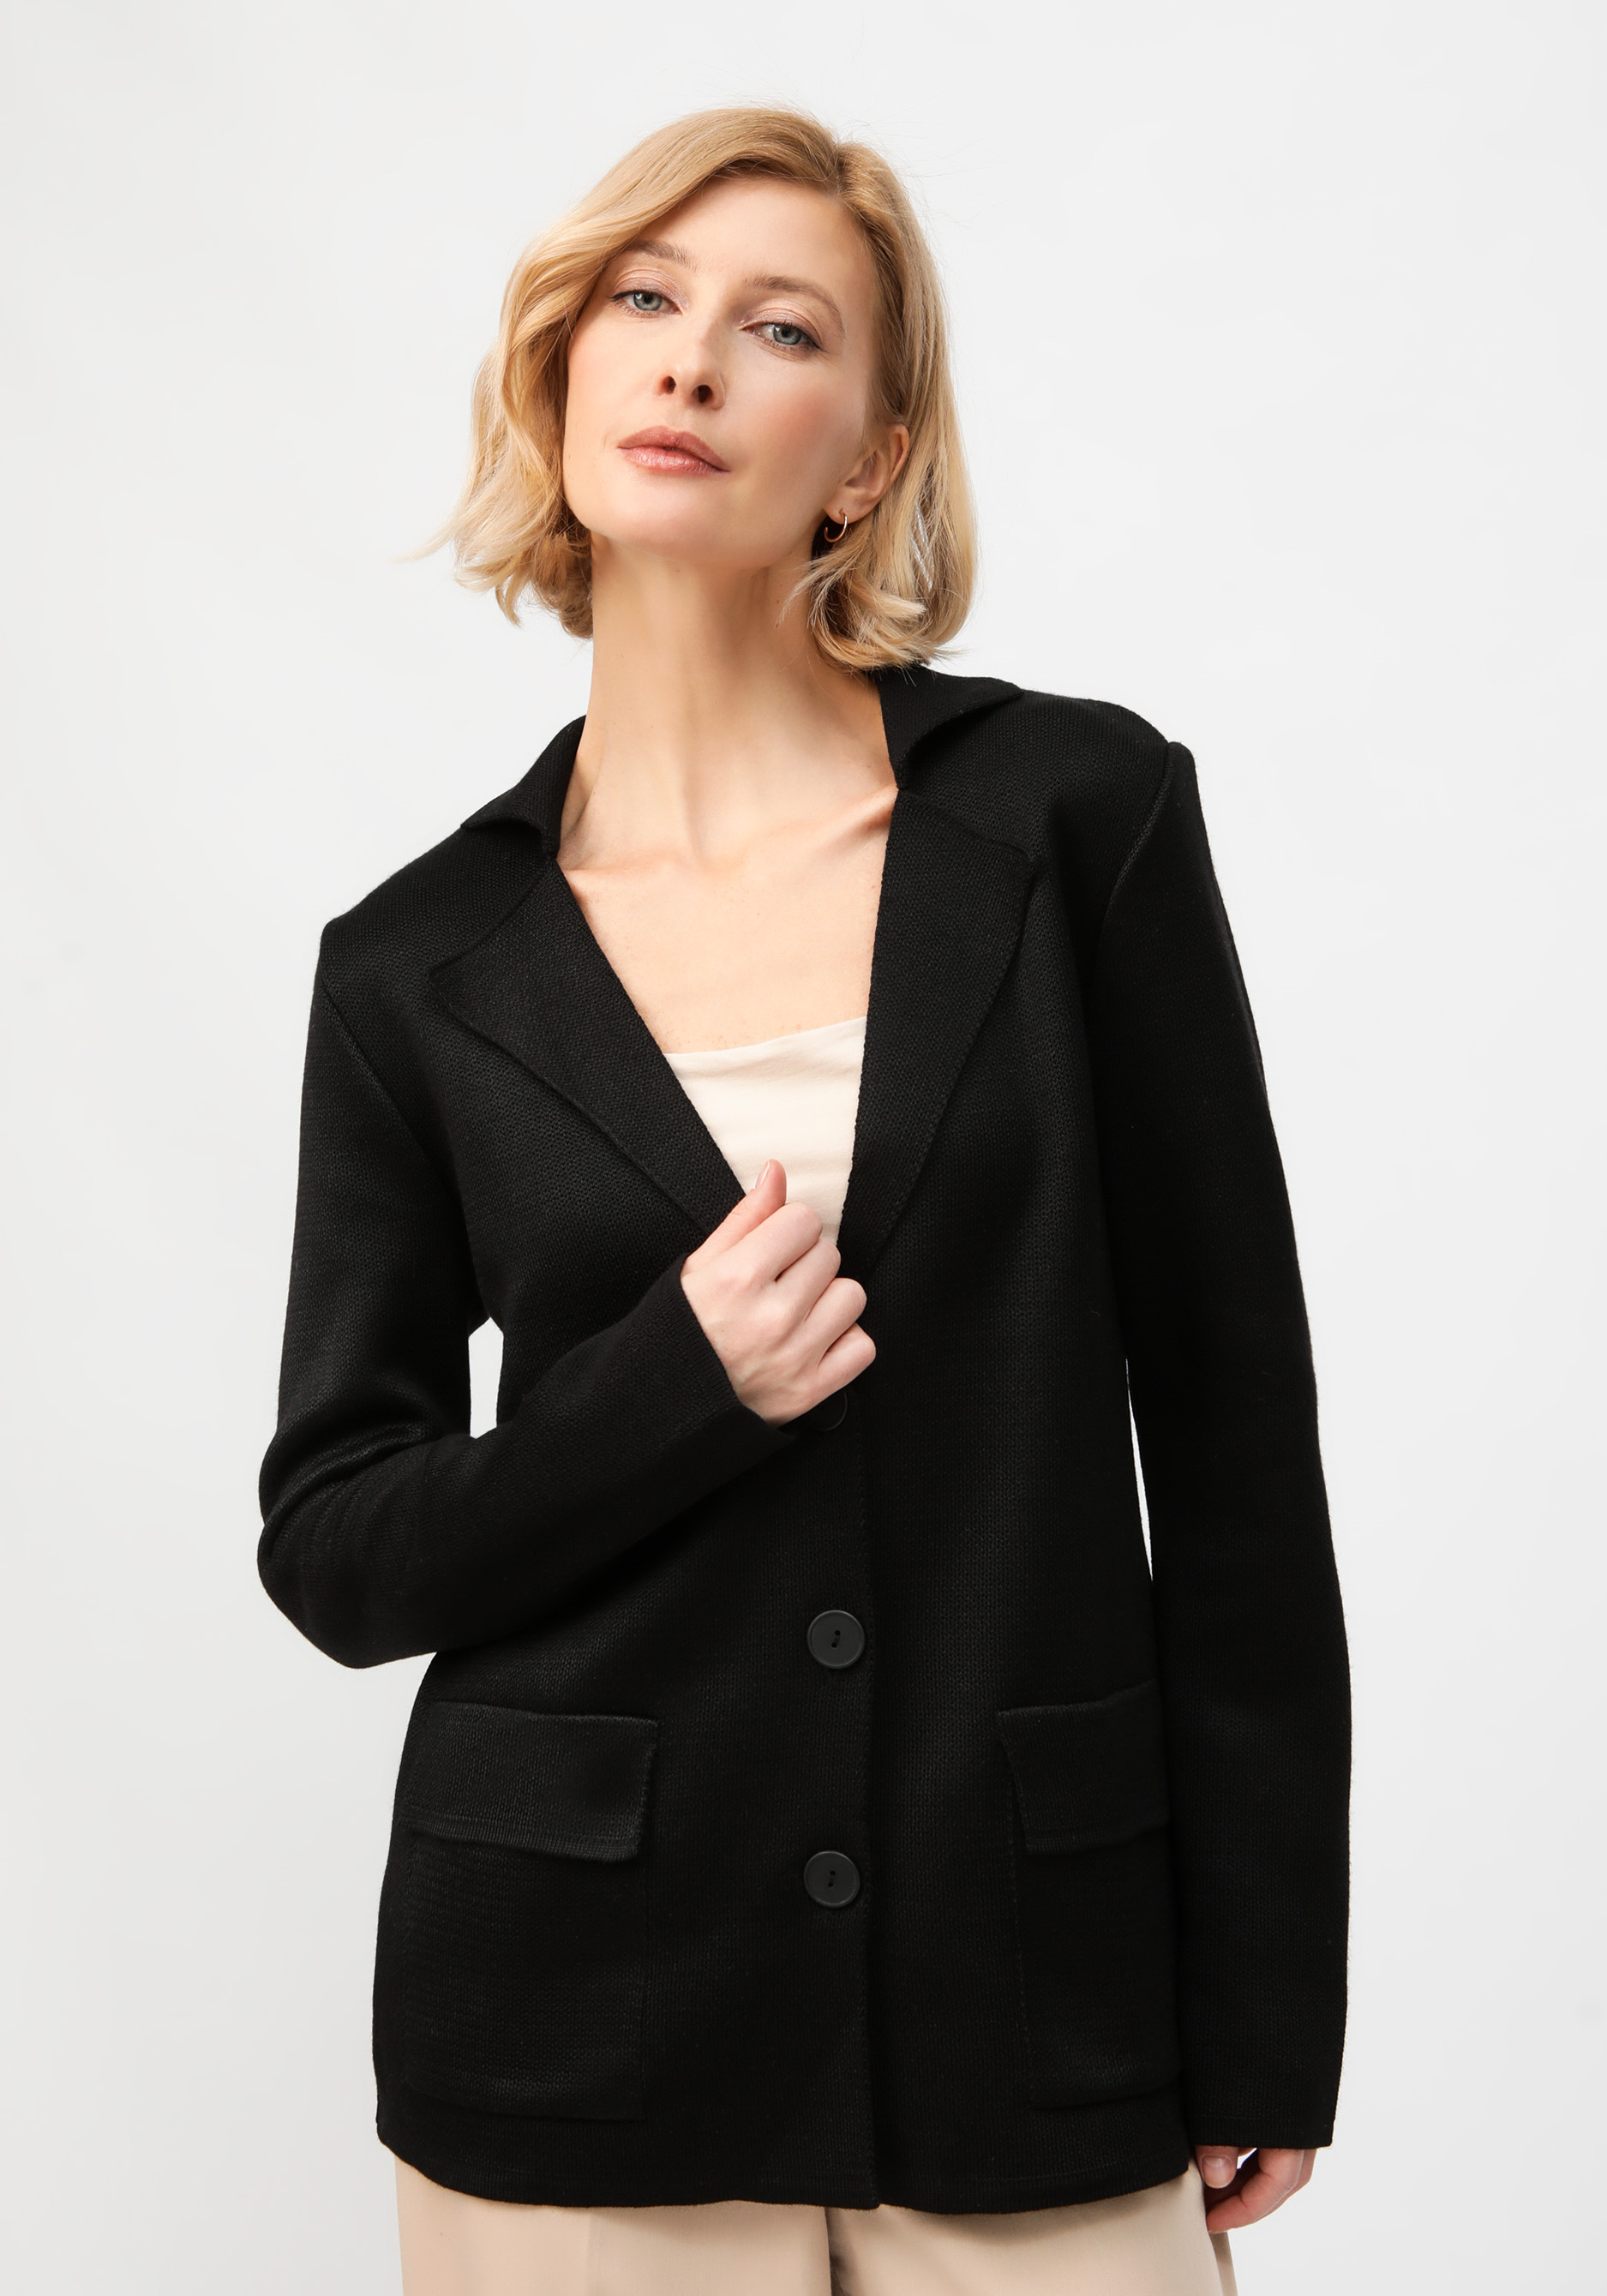 Пиджак с английским воротником Vivawool, размер 56, цвет черный